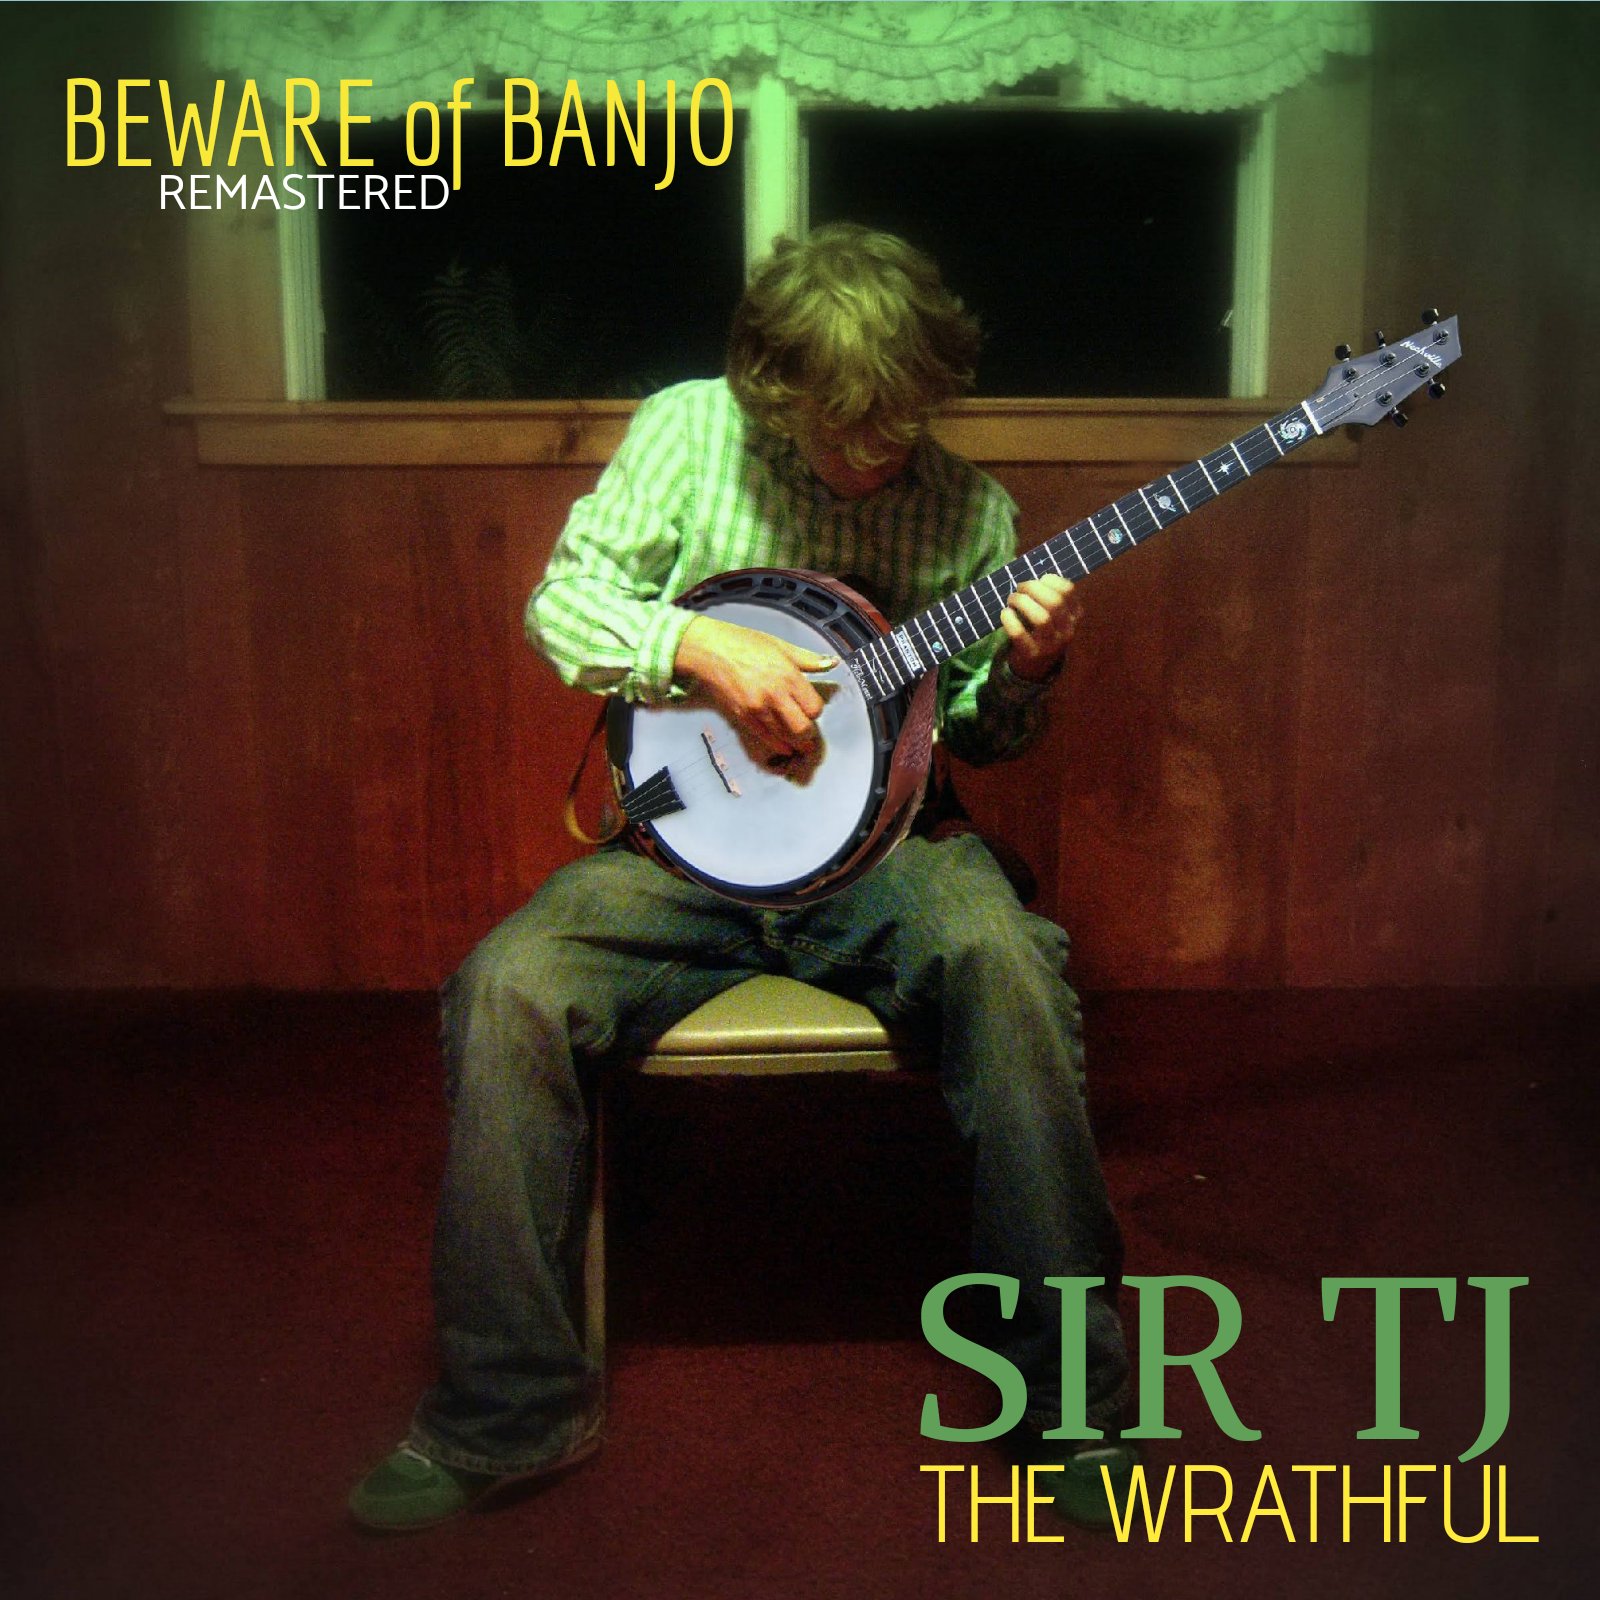 Let The Buyer Beware(of Banjo)